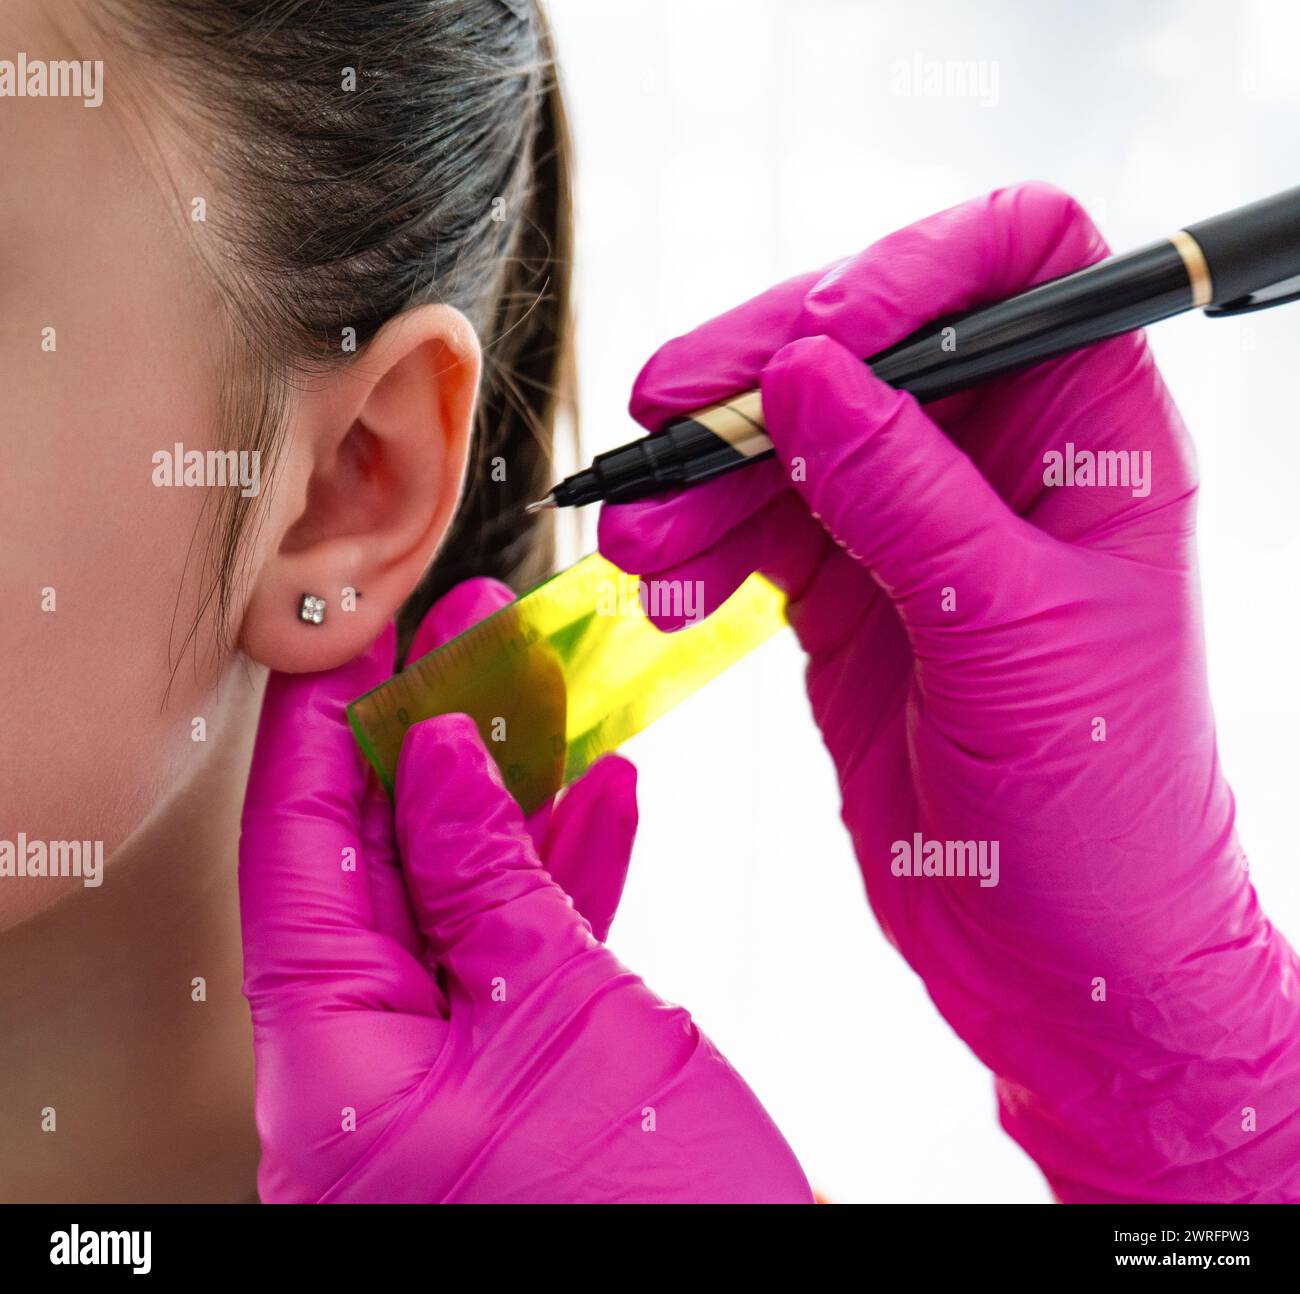 Le mani di una cosmetologa indossate con guanti sterili rosa tengono in mano un righello e una penna per misurare la posizione dell'orecchio di una paziente e perforare l'orecchino. Alta qualità p Foto Stock